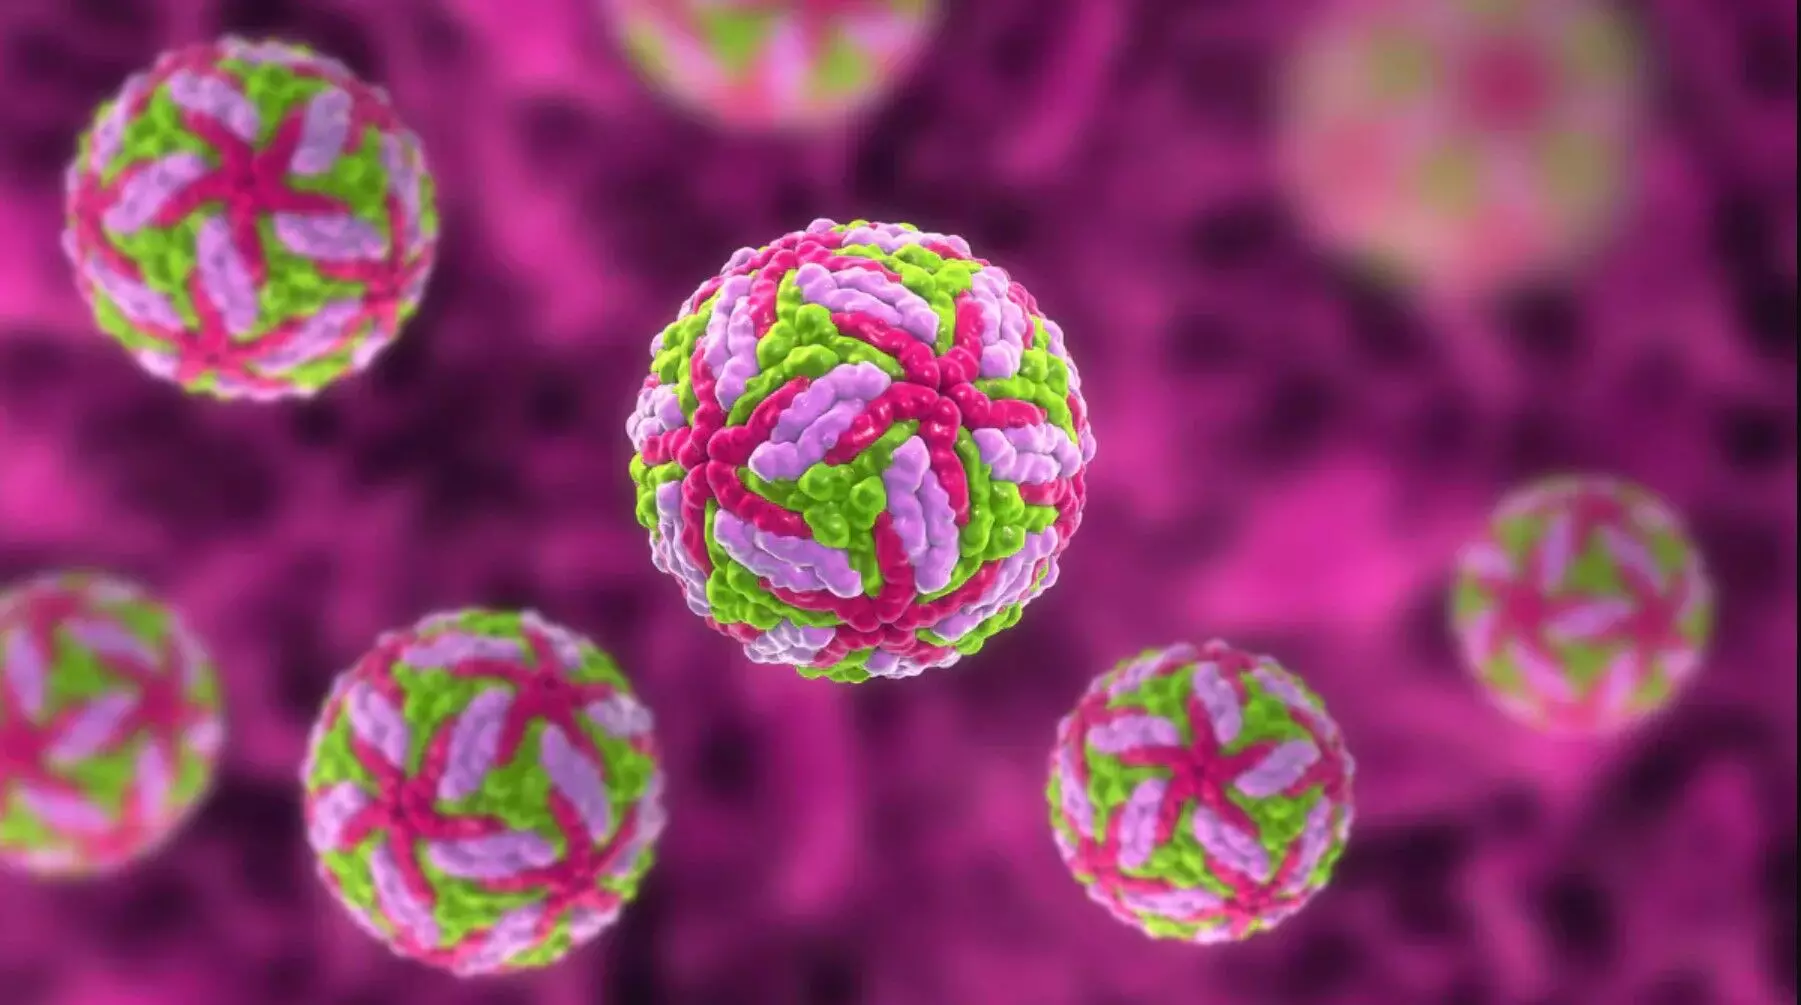 Powassan Virus: अमेरिका में पोवासन वायरस से एक की मौत, जानें इसके कारण, लक्षण और बचाव के तरीके